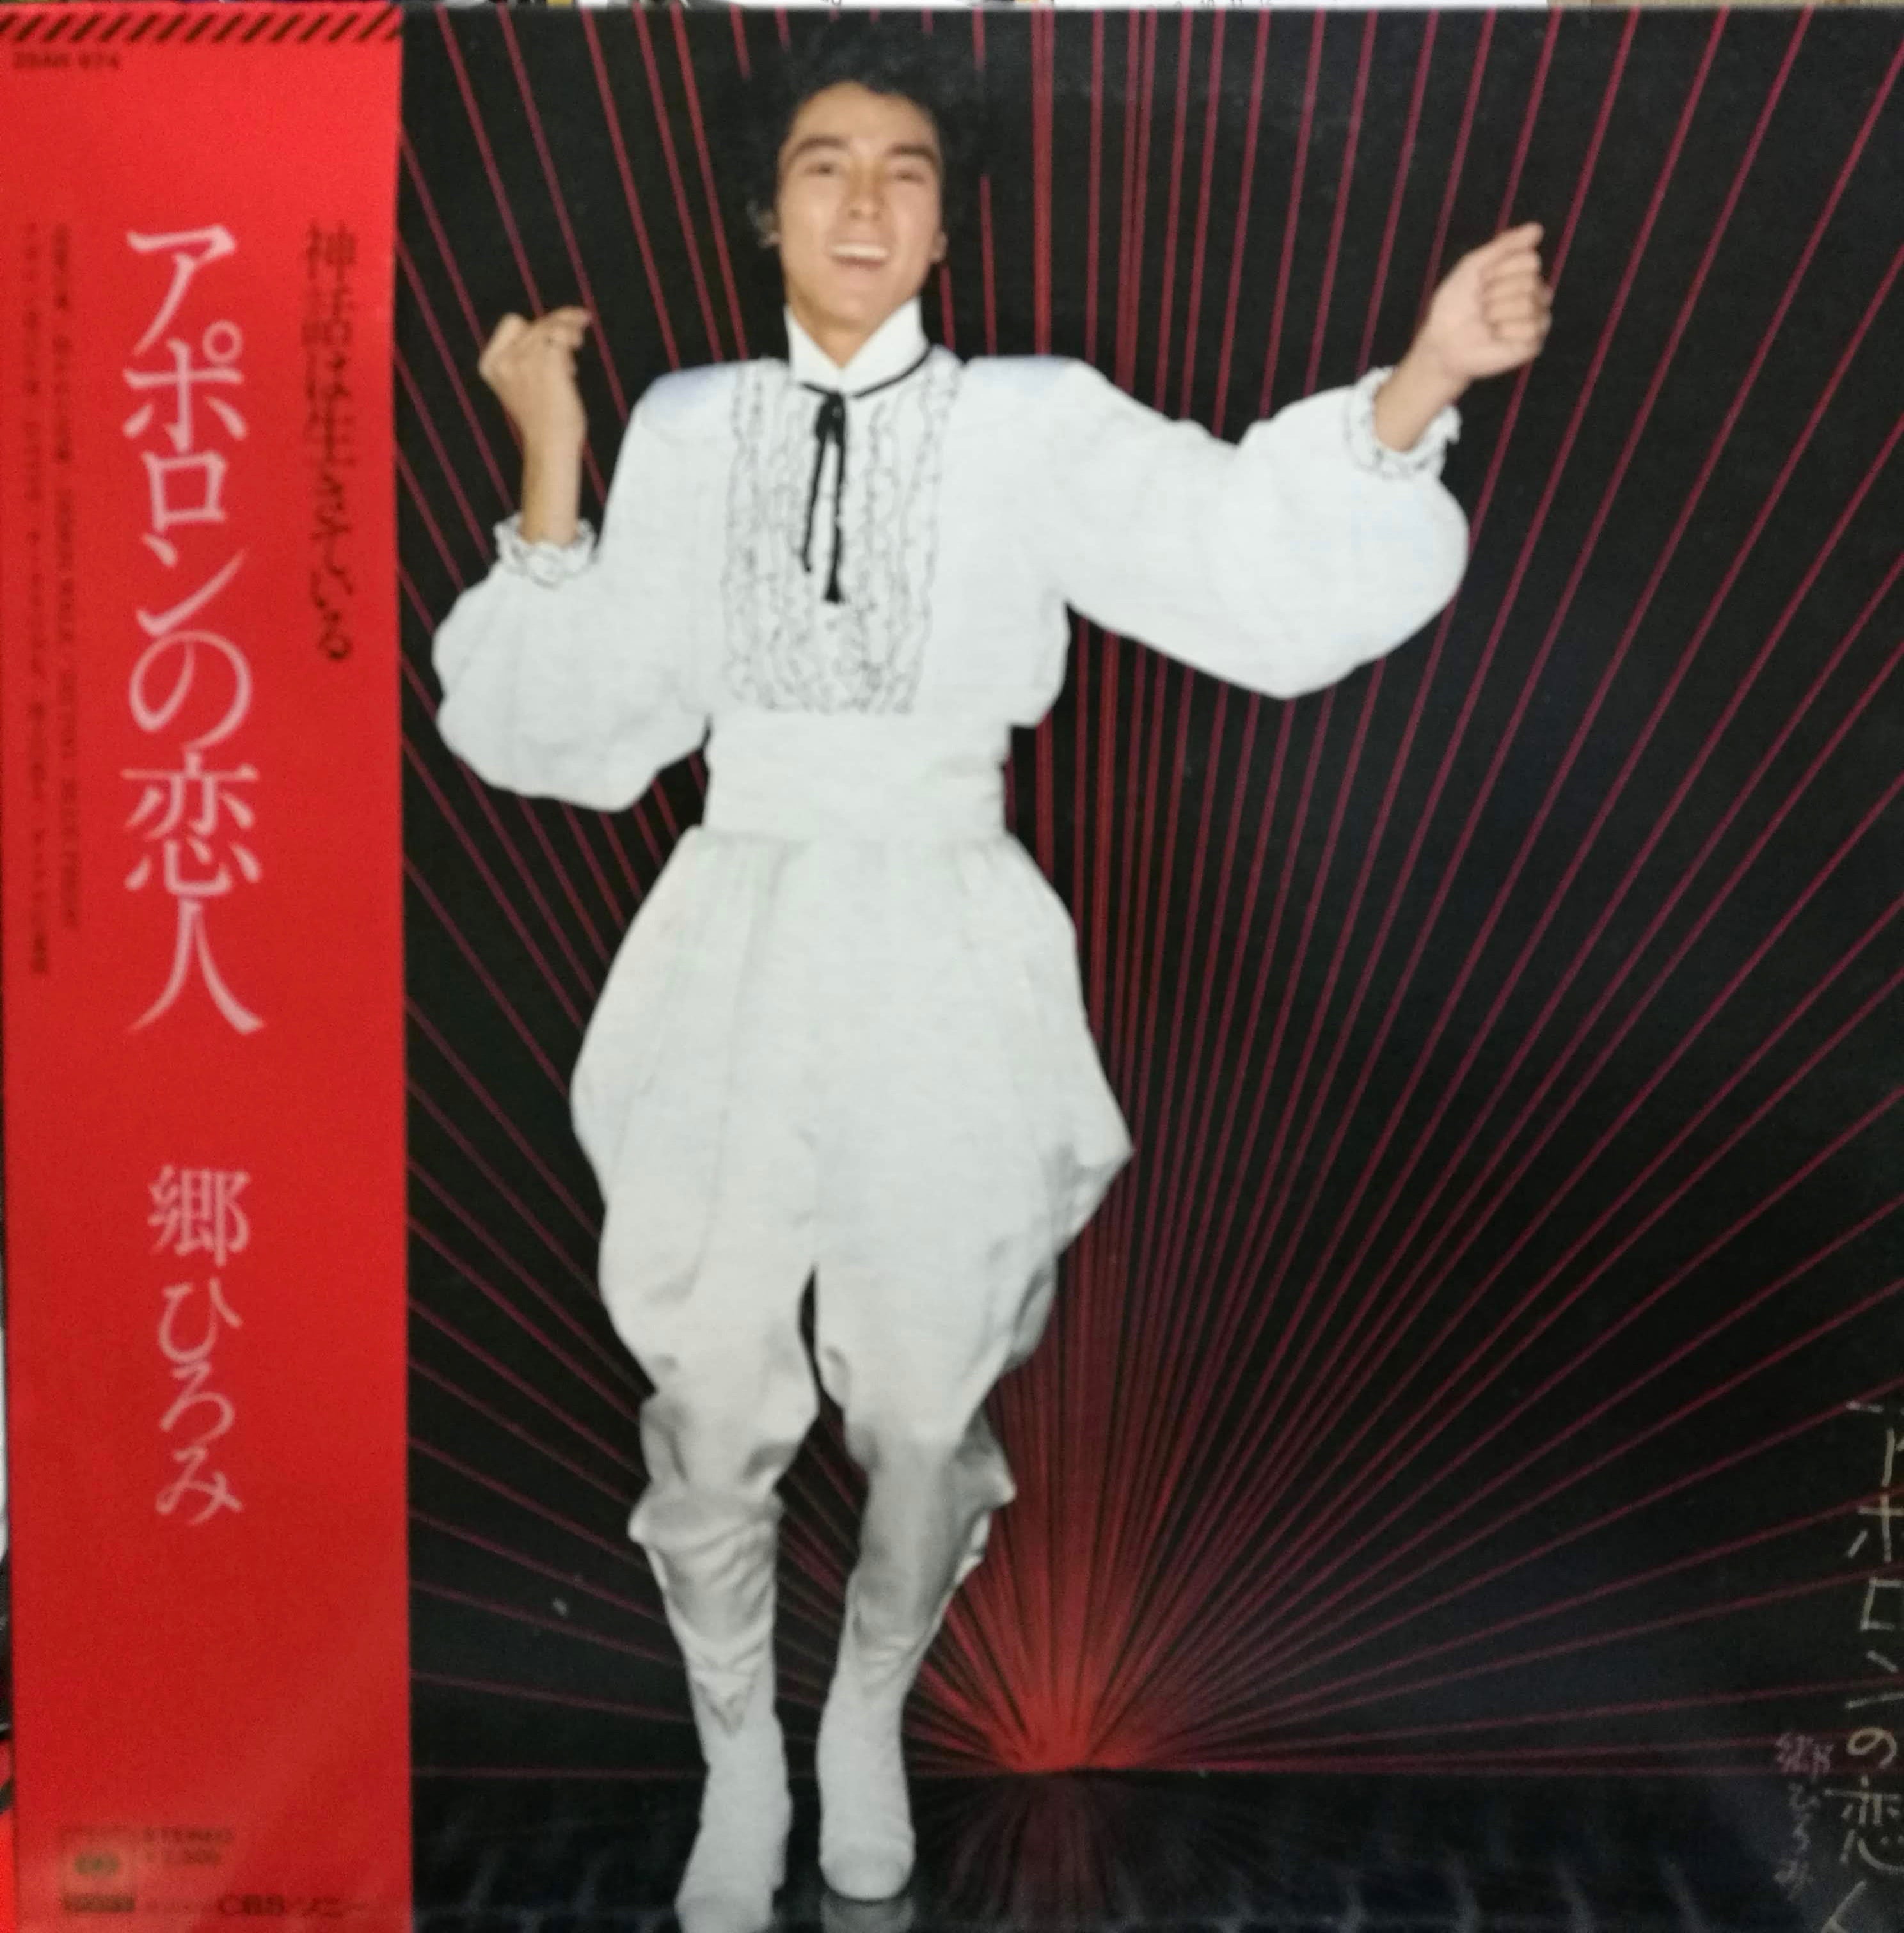 廃盤LP】小川順子 / 十九の恋唄 - レコード